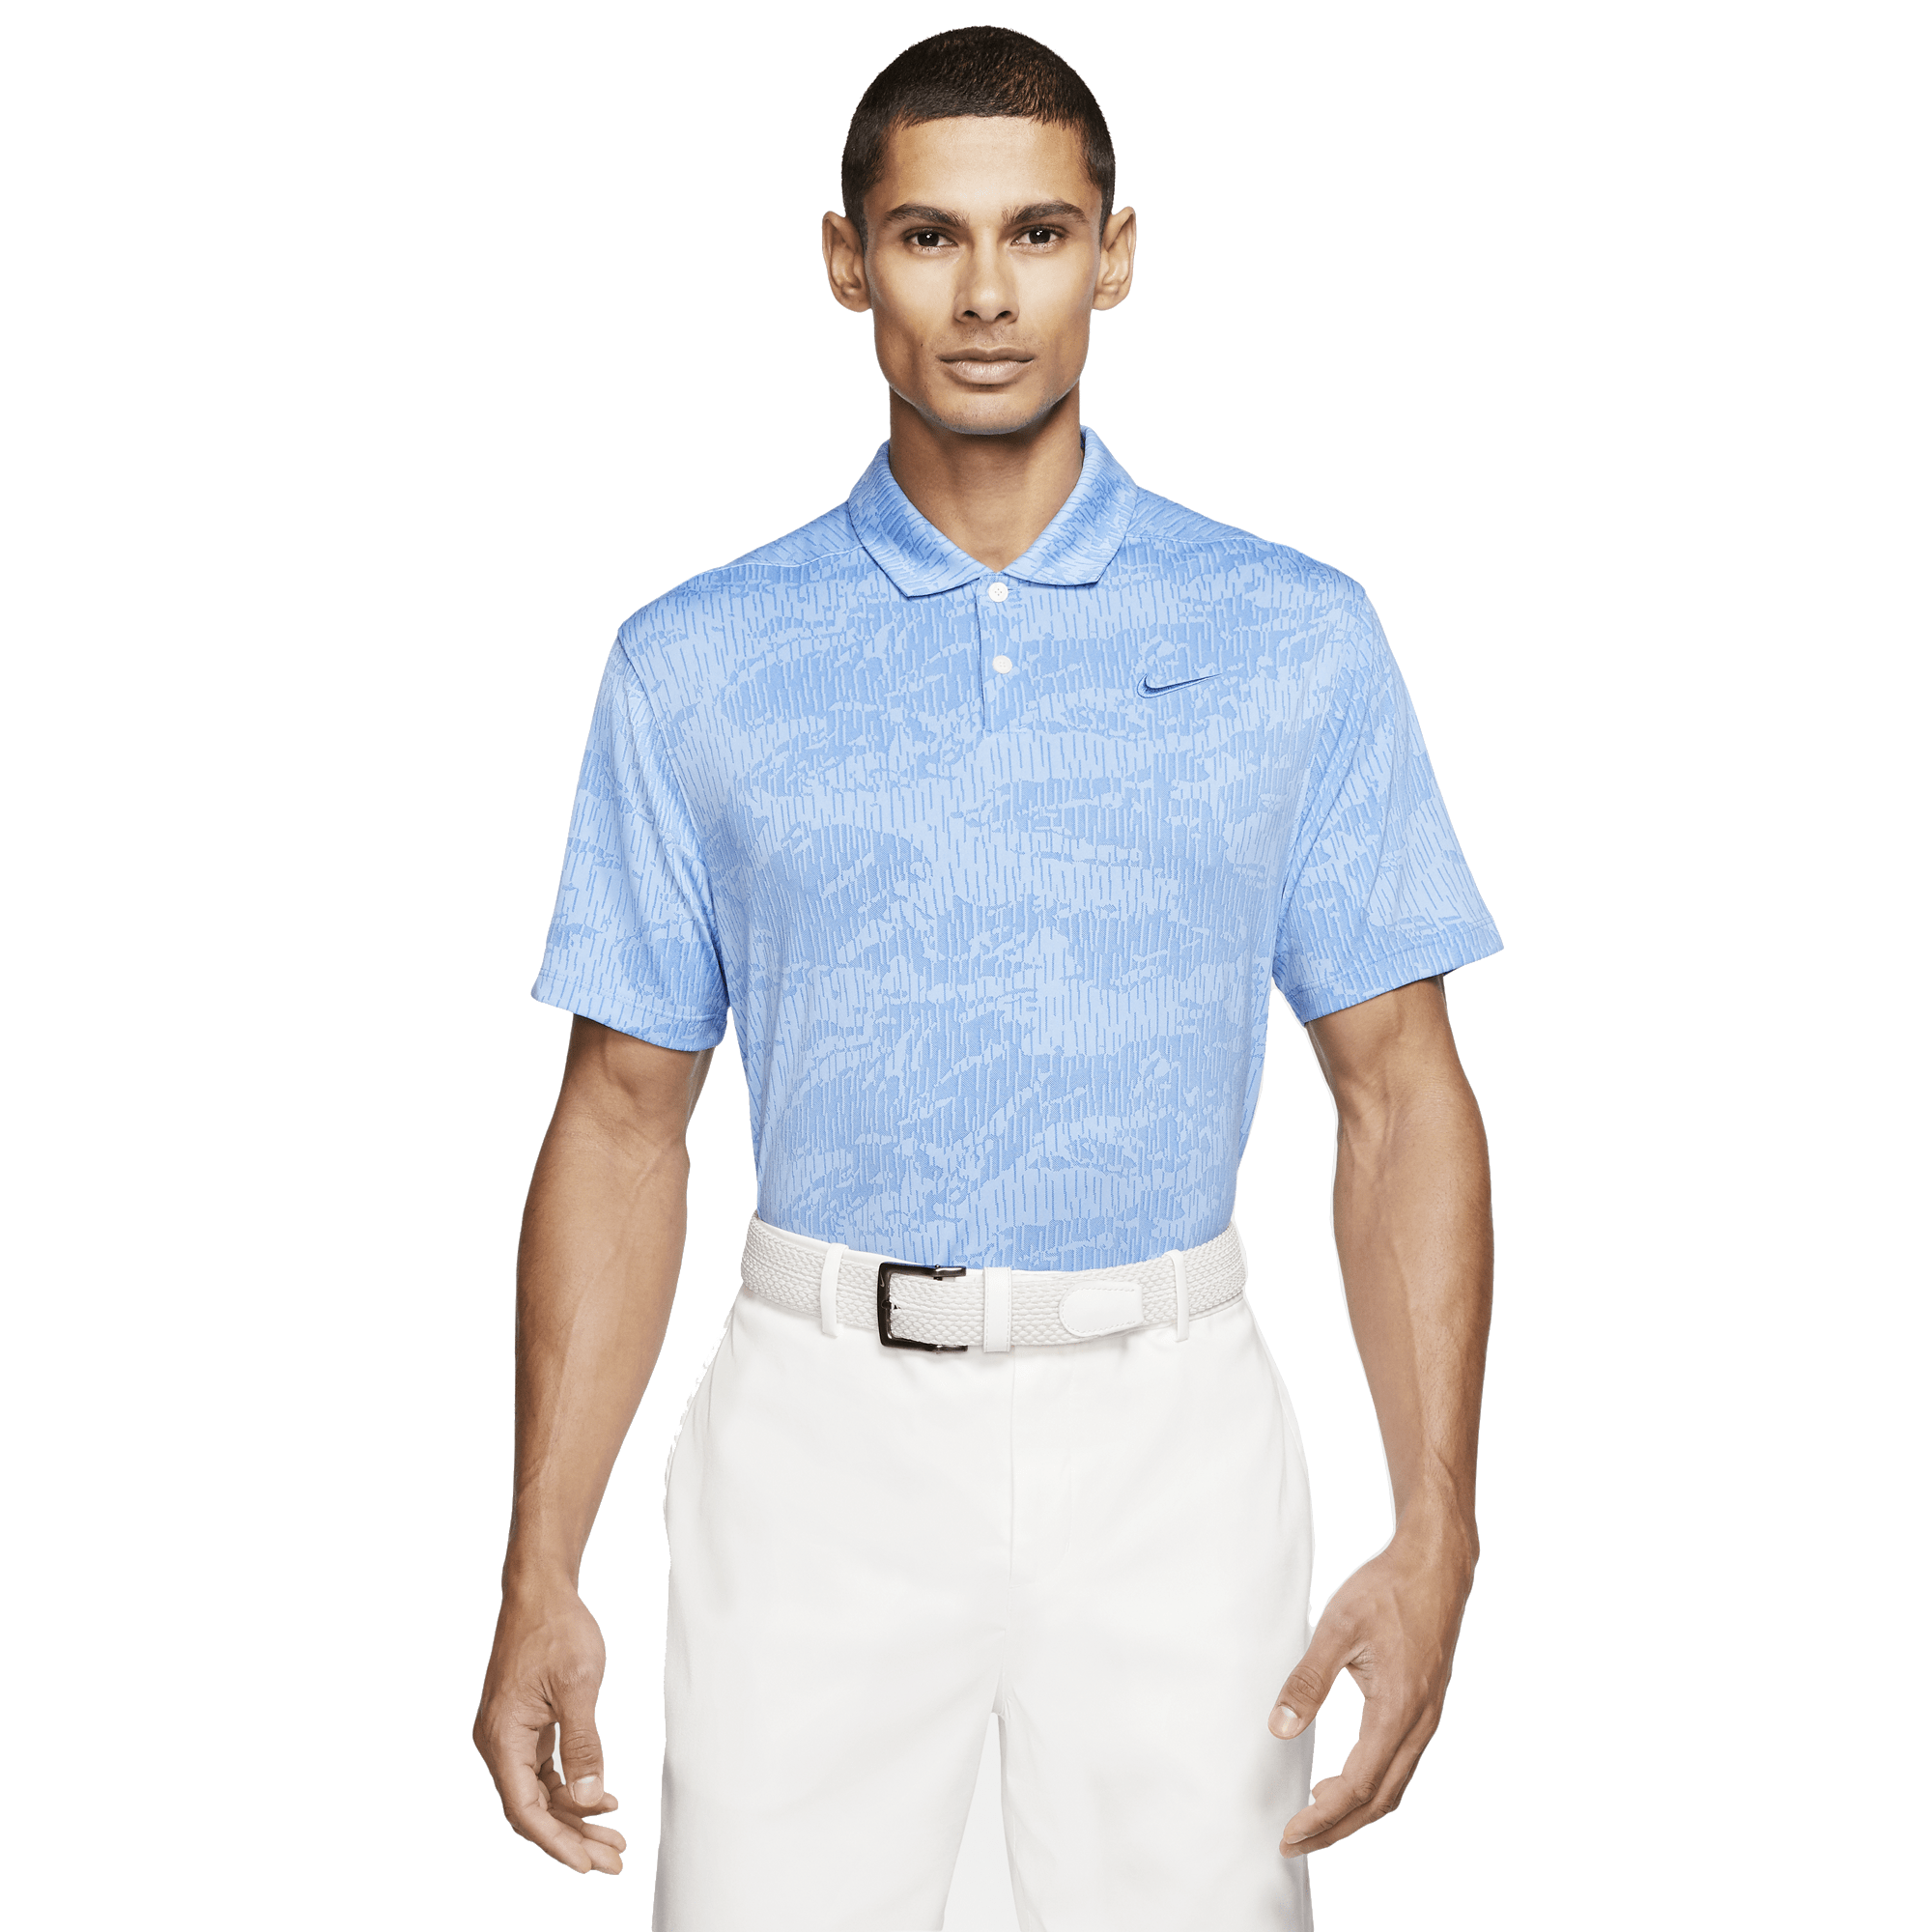 nike dry vapor jacquard camo golf polo shirt